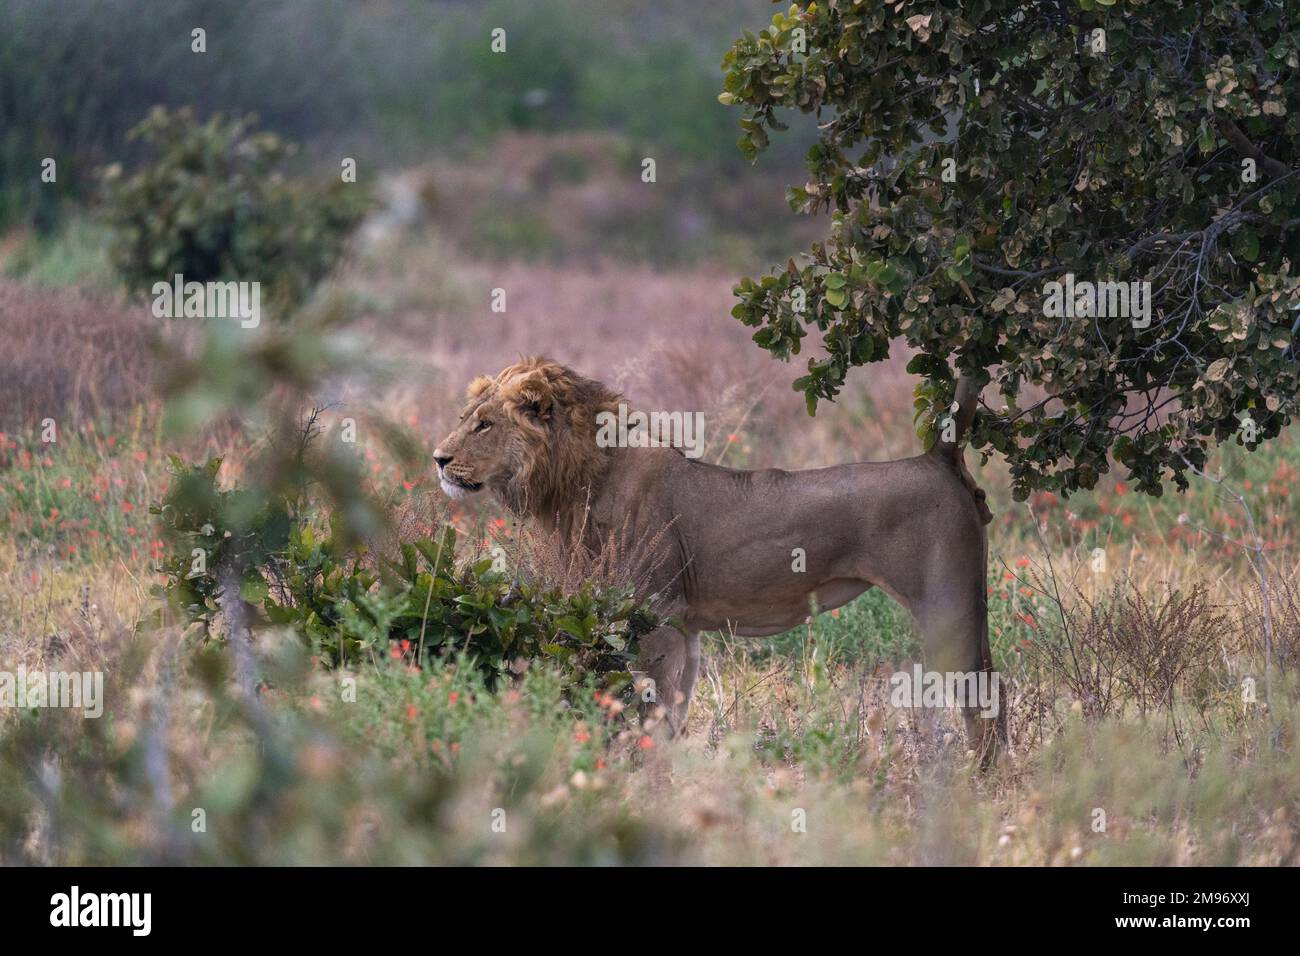 A lion (Panthera leo) marking territory, Savuti, Chobe National Park, Botswana. Stock Photo